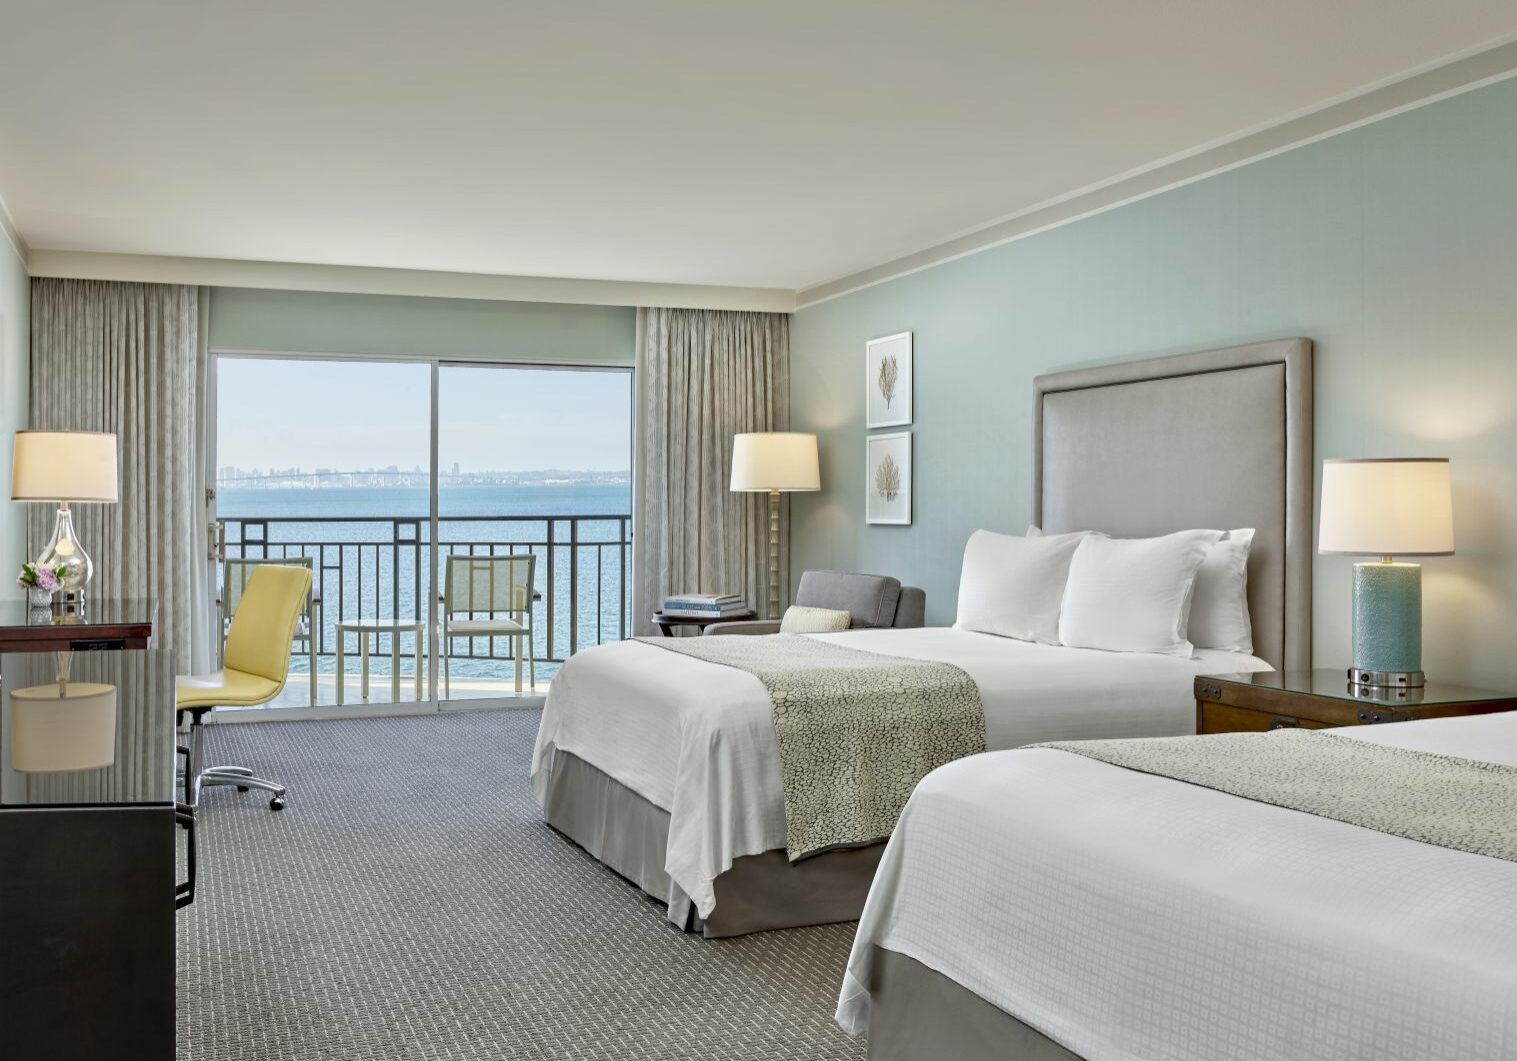 Leows Coronado Bay Resort hotel rooms